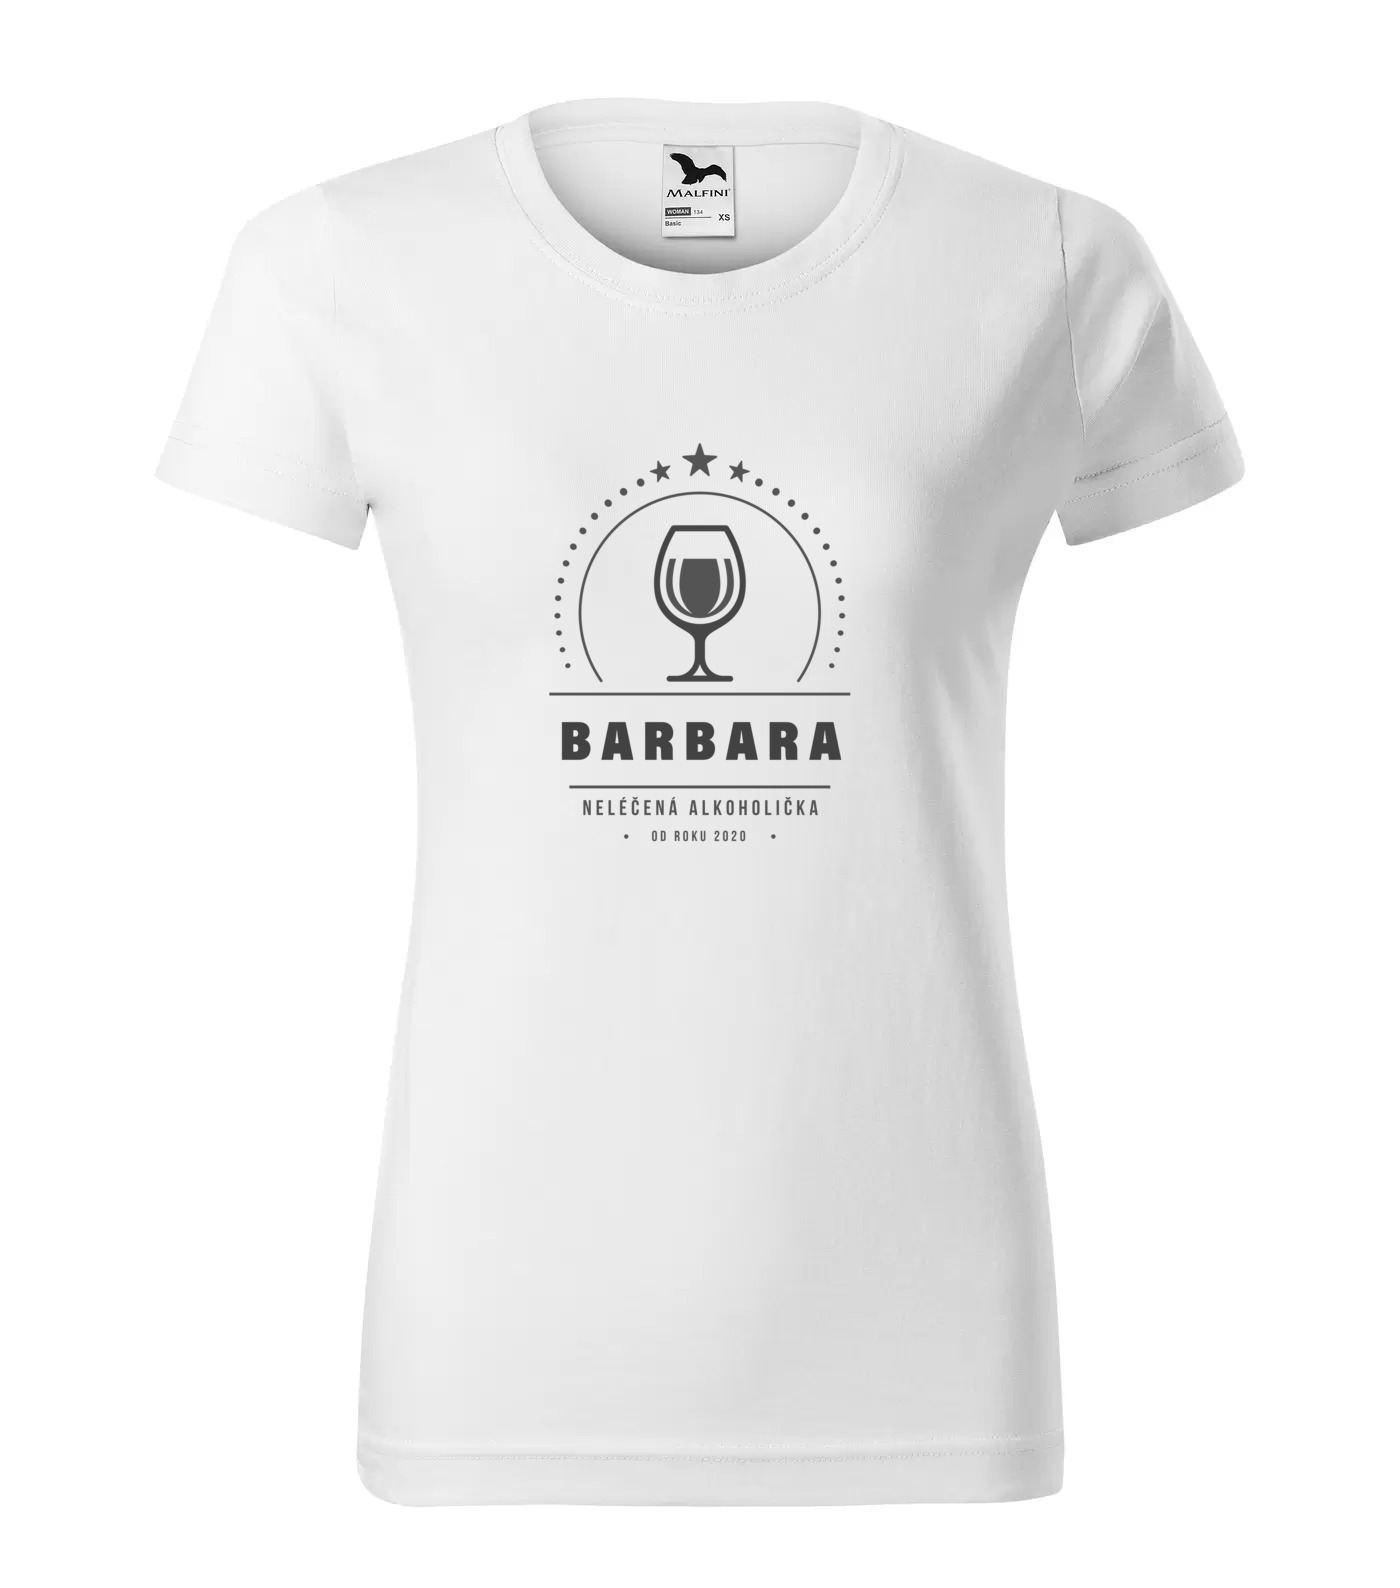 Tričko Alkoholička Barbara